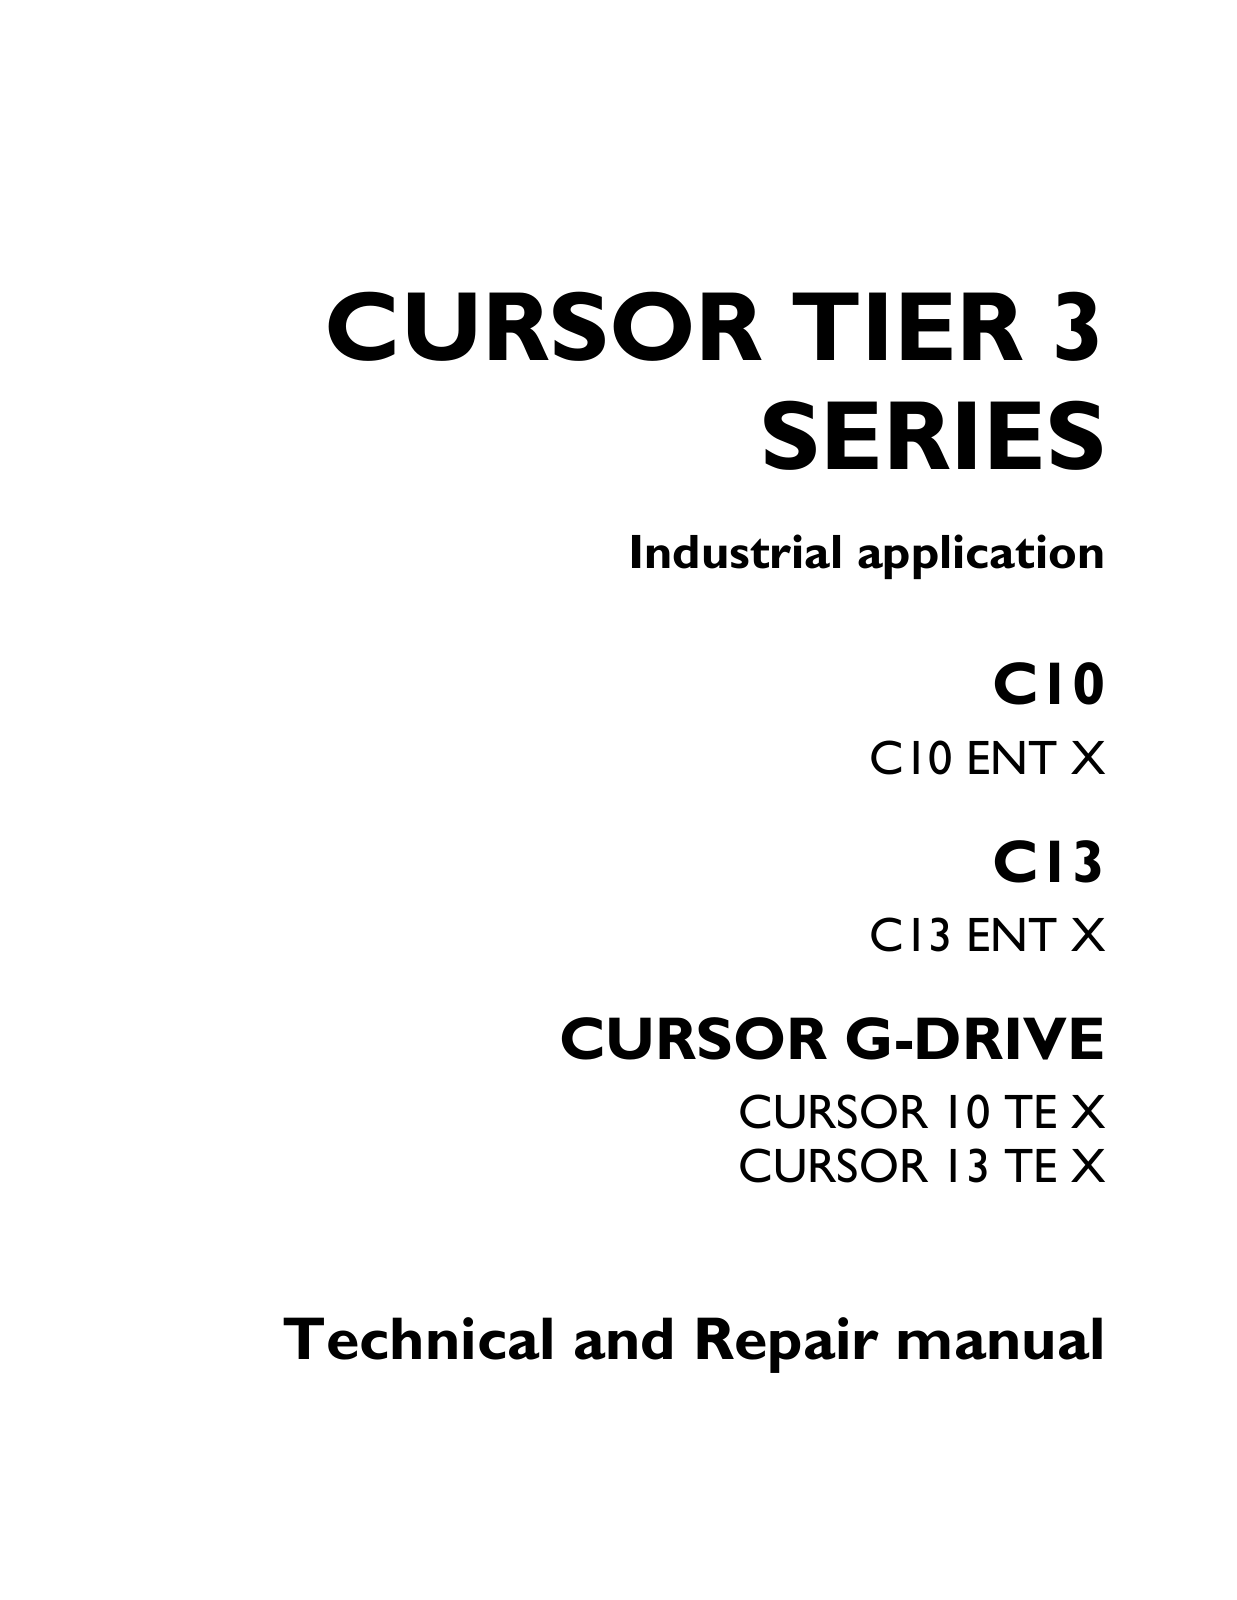 Iveco Cursor 10, Cursor 13 Repair Manual